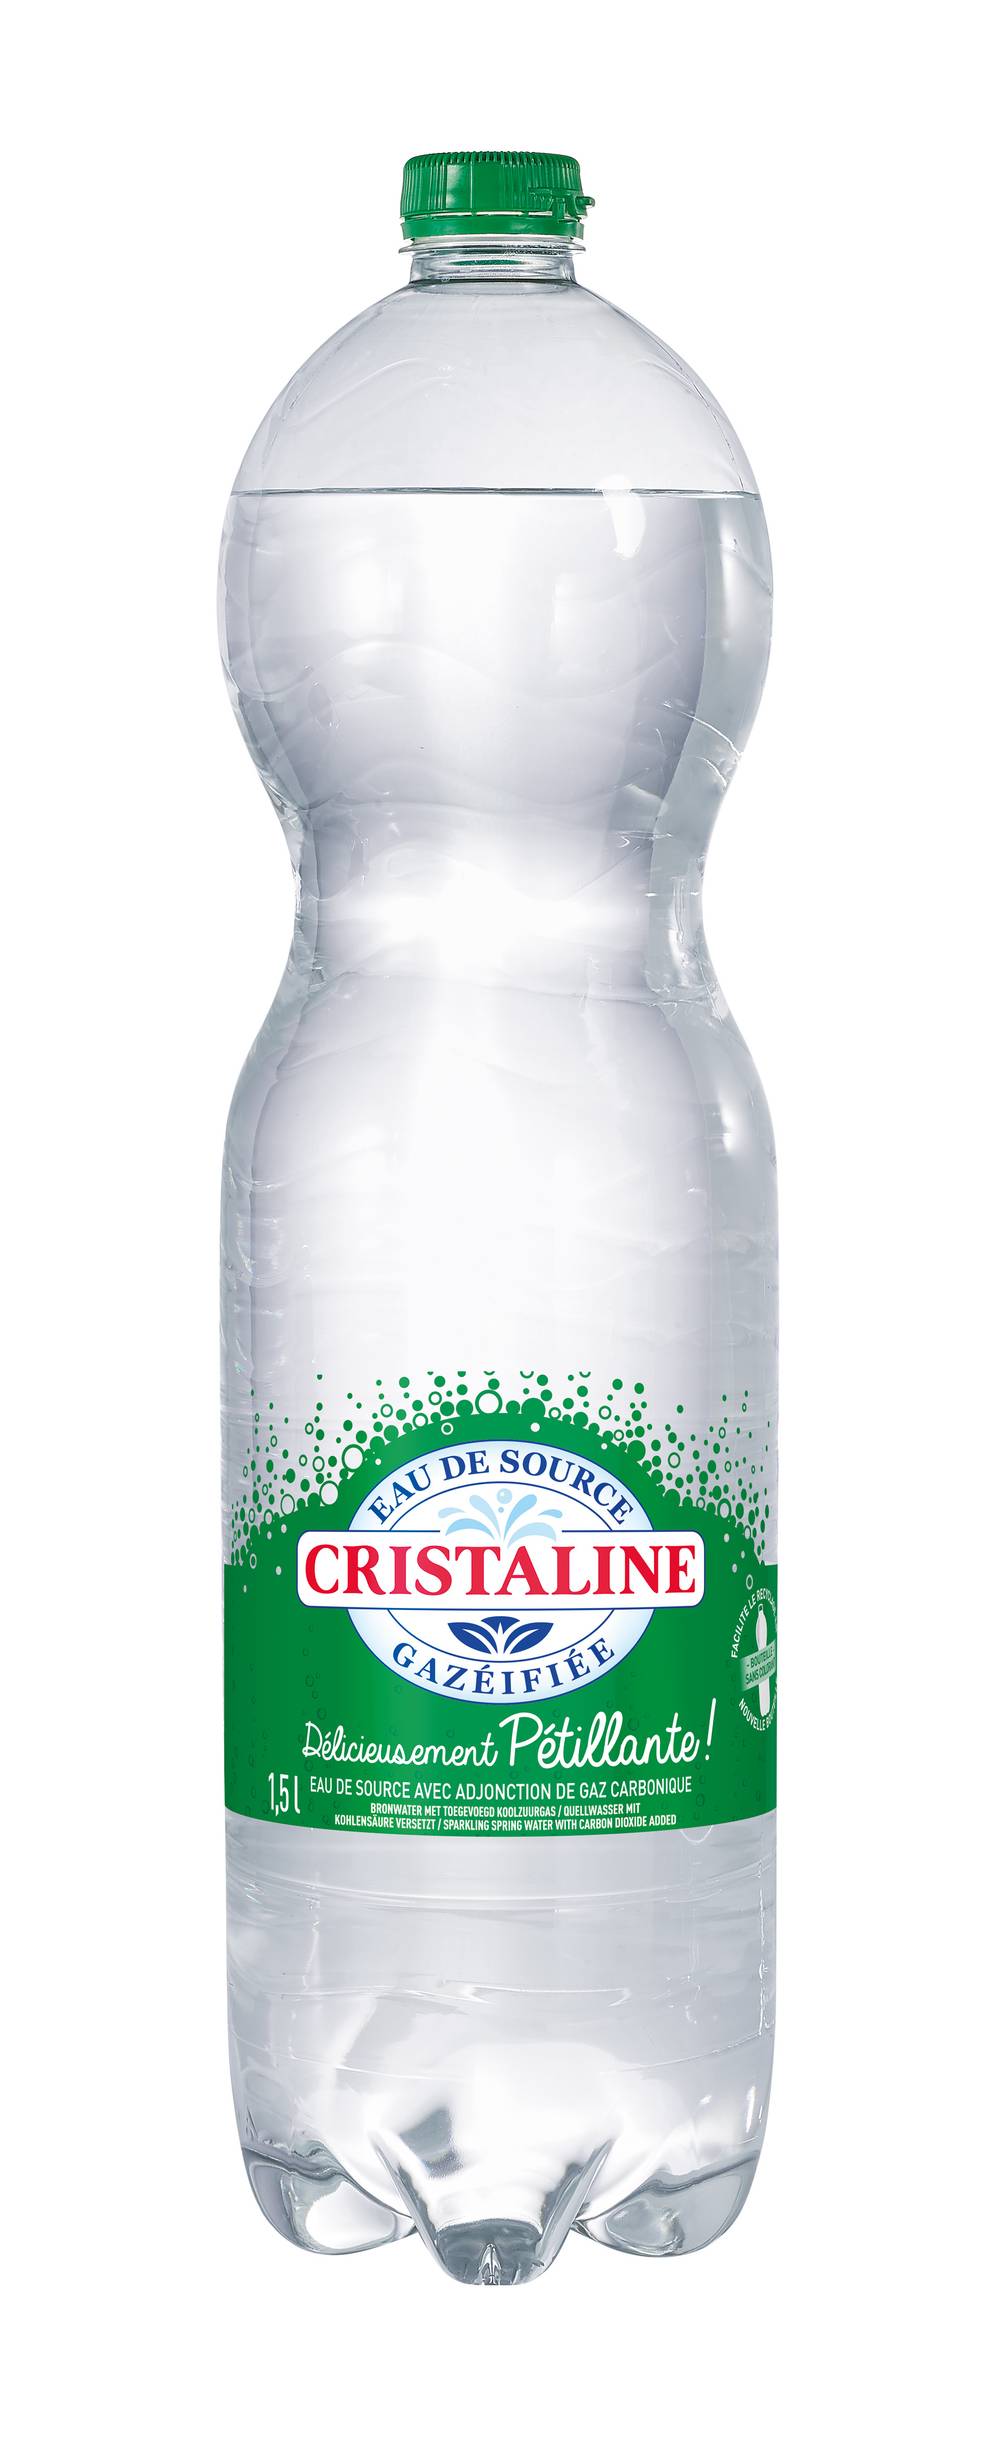 Cristaline - Eau de source pétillante (1.5 L)